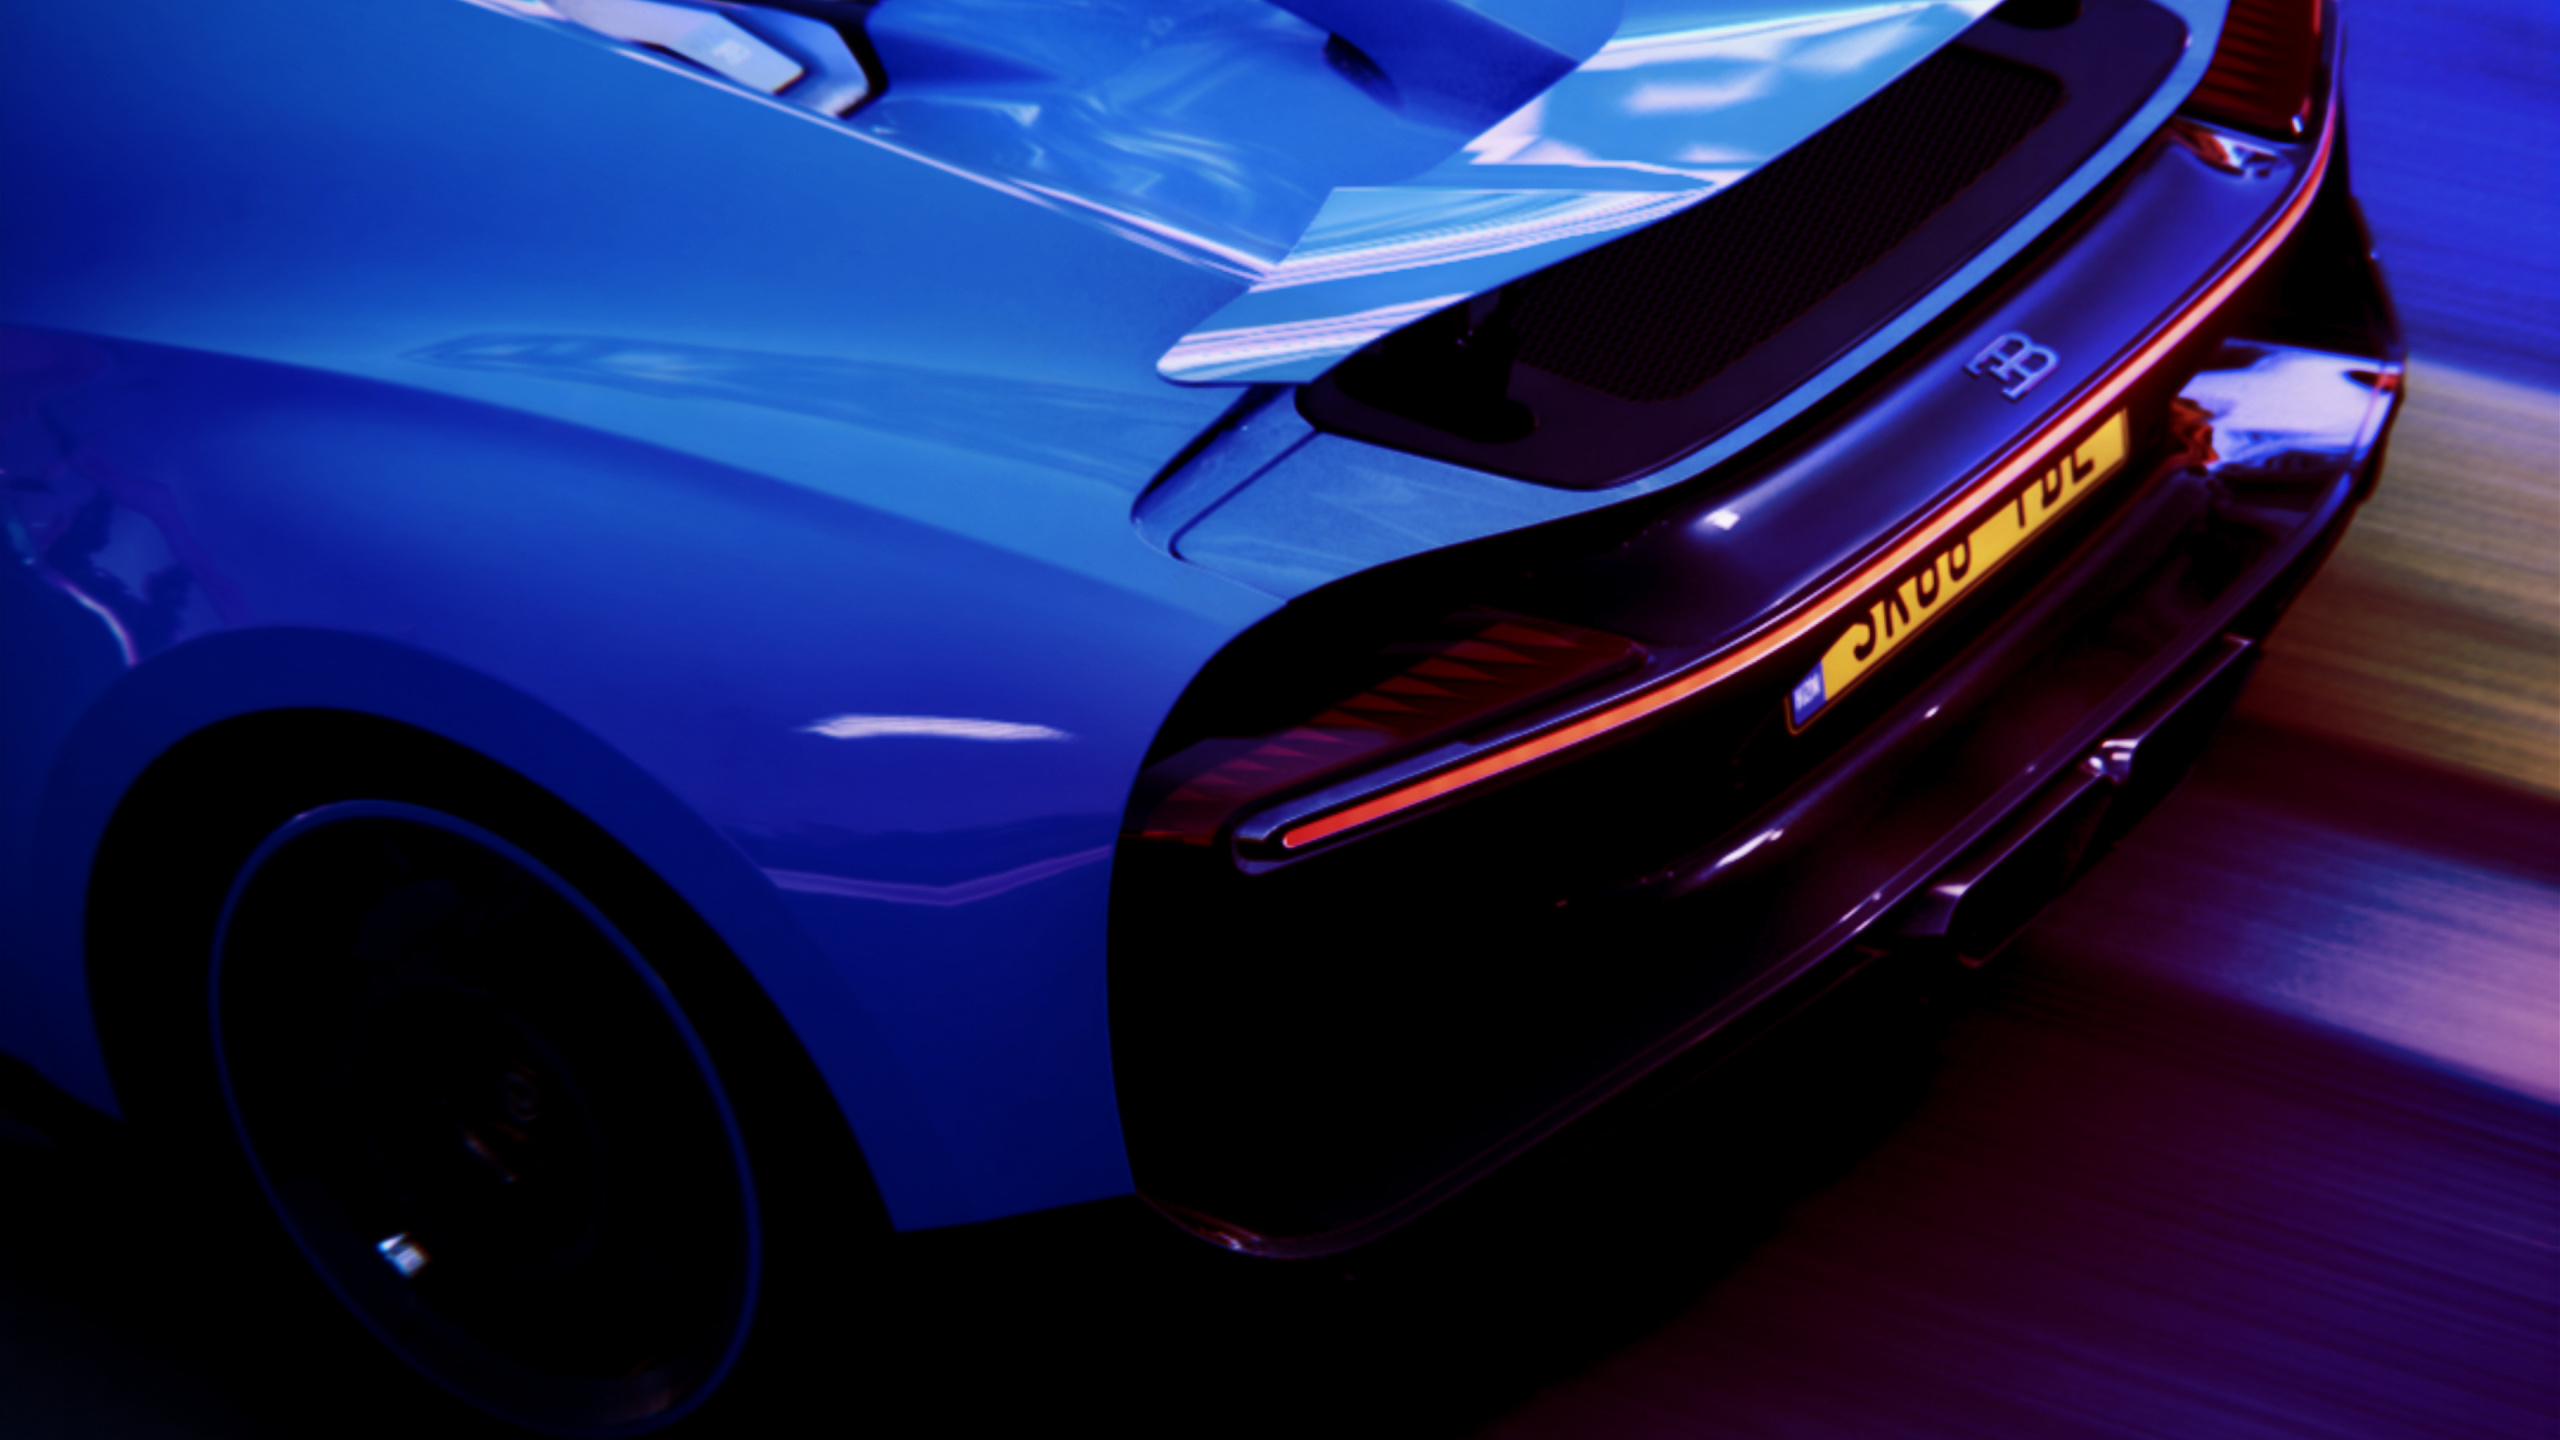 Blue Porsche 911 on Black Background. Wallpaper in 2560x1440 Resolution